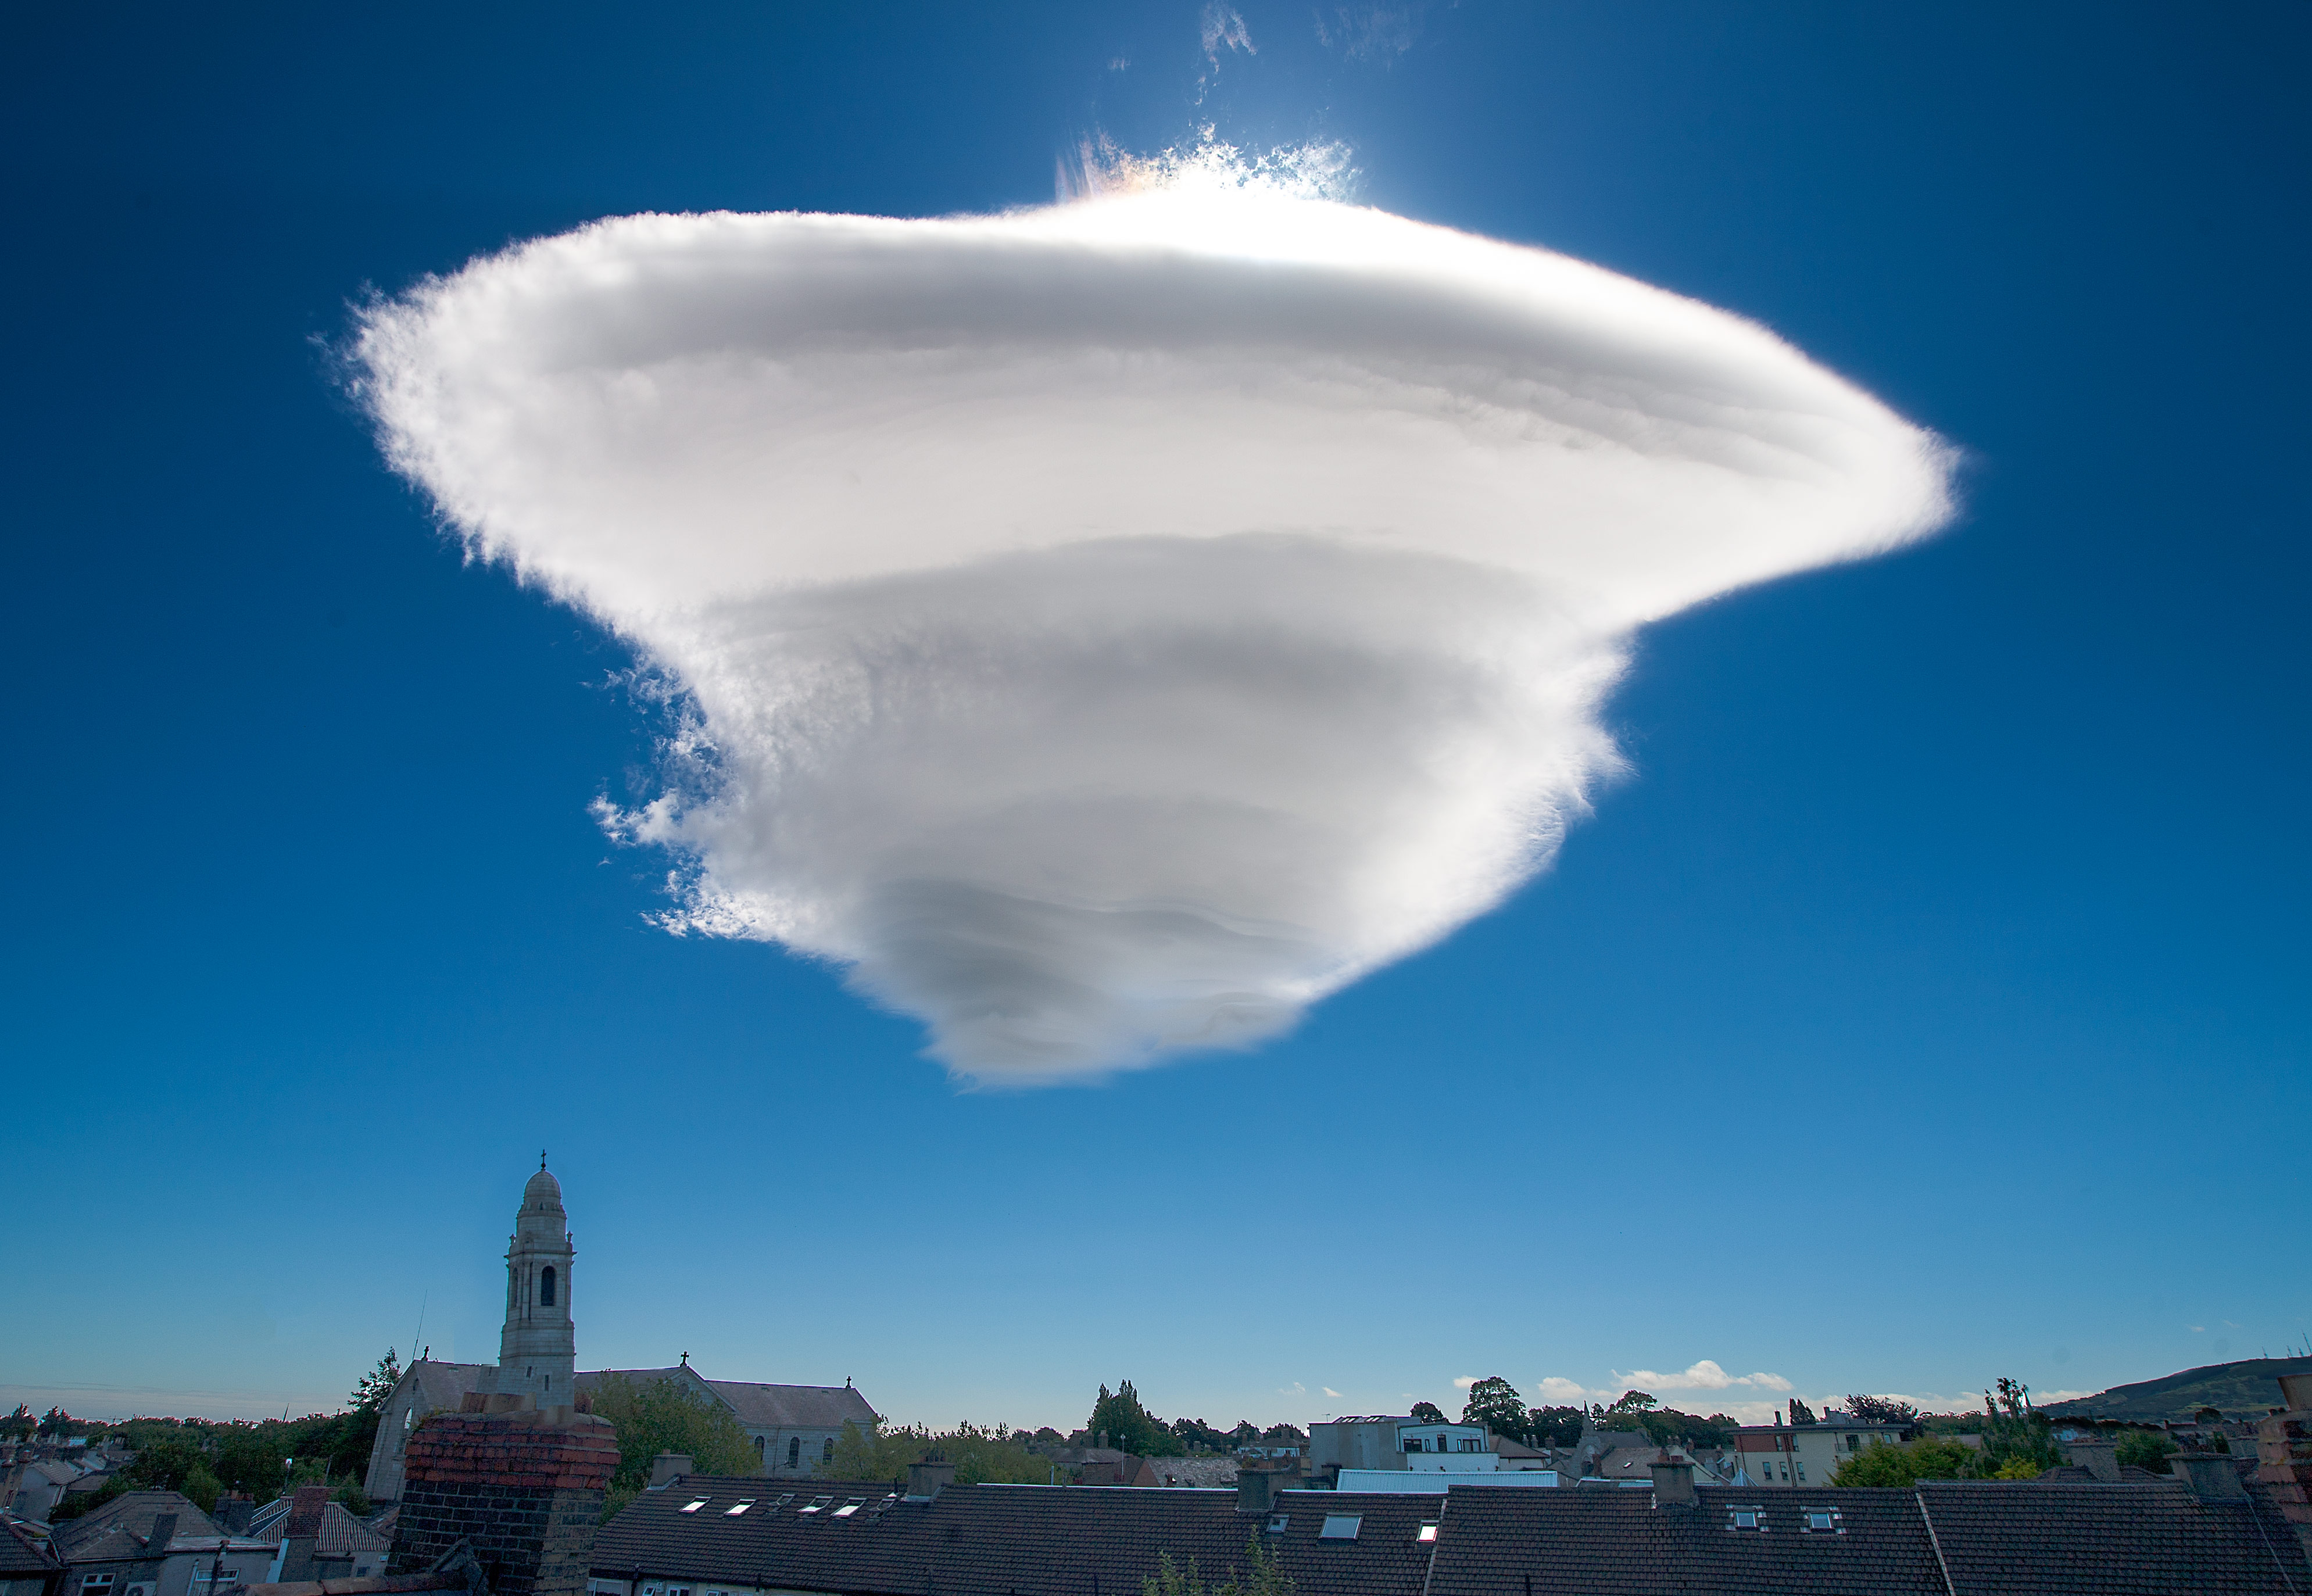 Lenticular cloud - Wikipedia